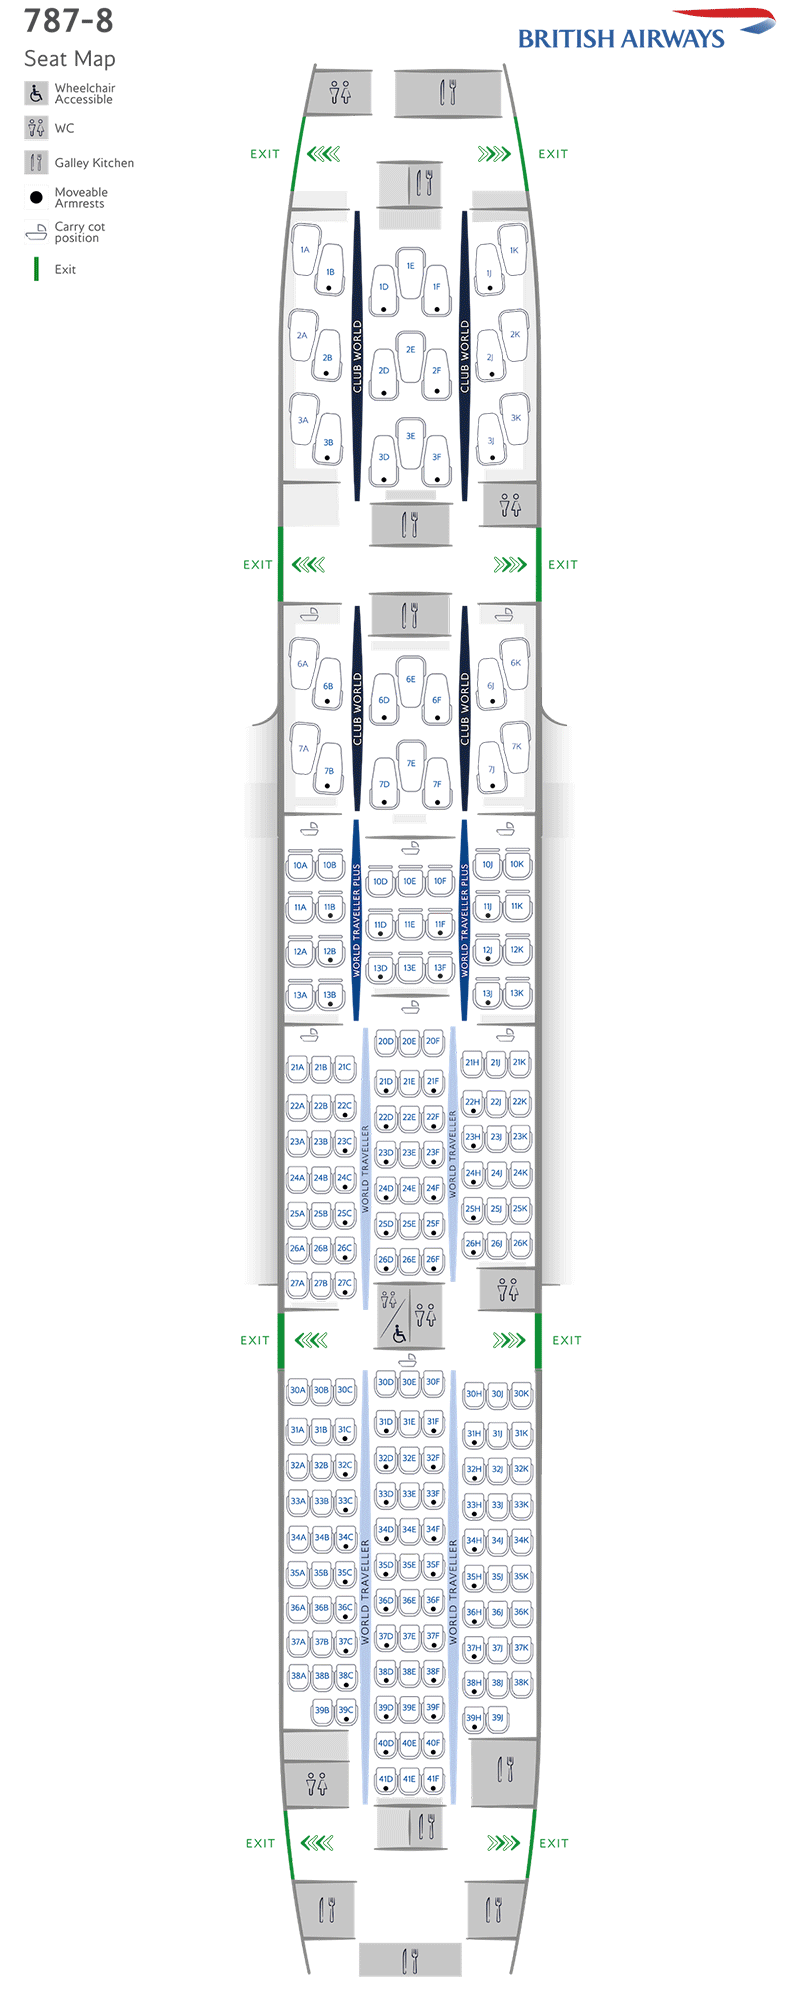 Configurazione dei posti Boeing 787-8